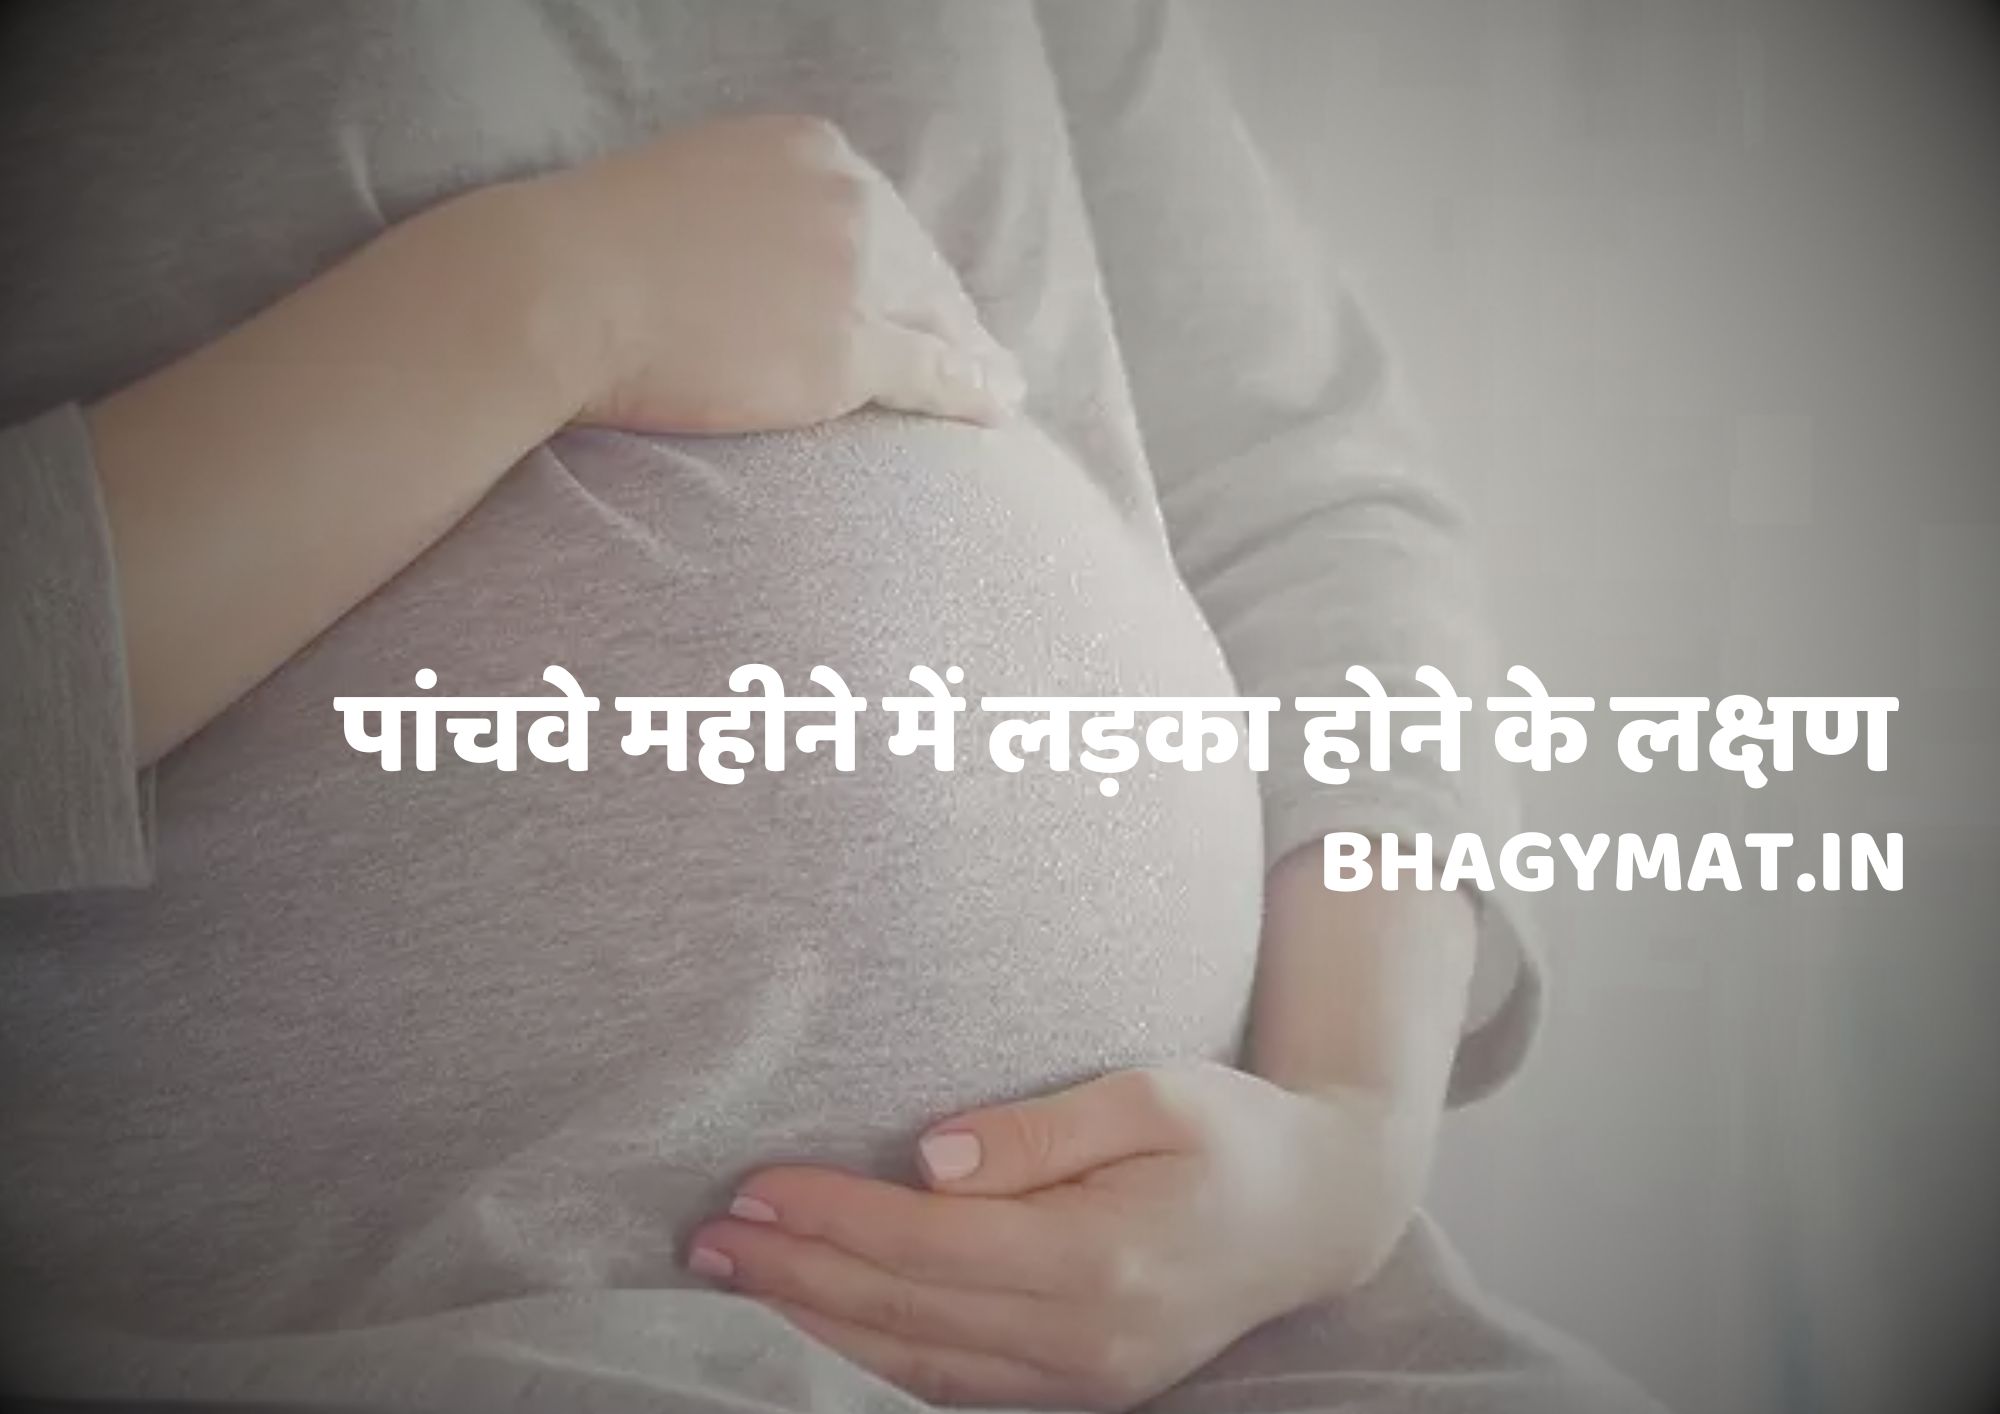 पांचवे महीने में लड़का होने के लक्षण क्या है हिंदी में (Panchave Mahine Me Ladka Hone Ke Lakshan)